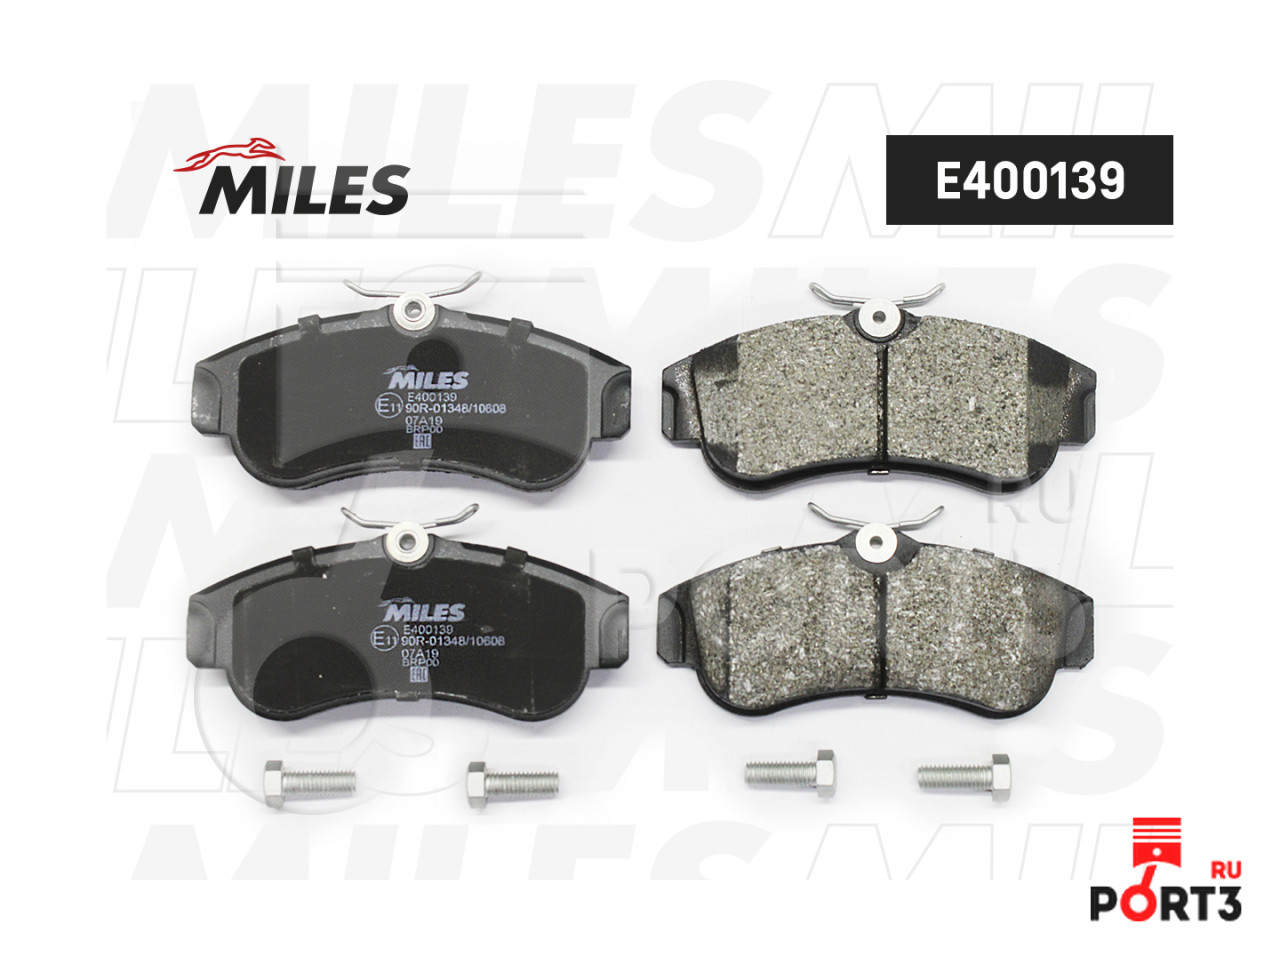 Комплект miles. Miles e400509 колодки тормозные дисковые передние, комплект "LOWMETALLIC". Комплект тормозных колодок Miles e210038 для Hyundai Accent II, III. Miles db44006. NK 222254.